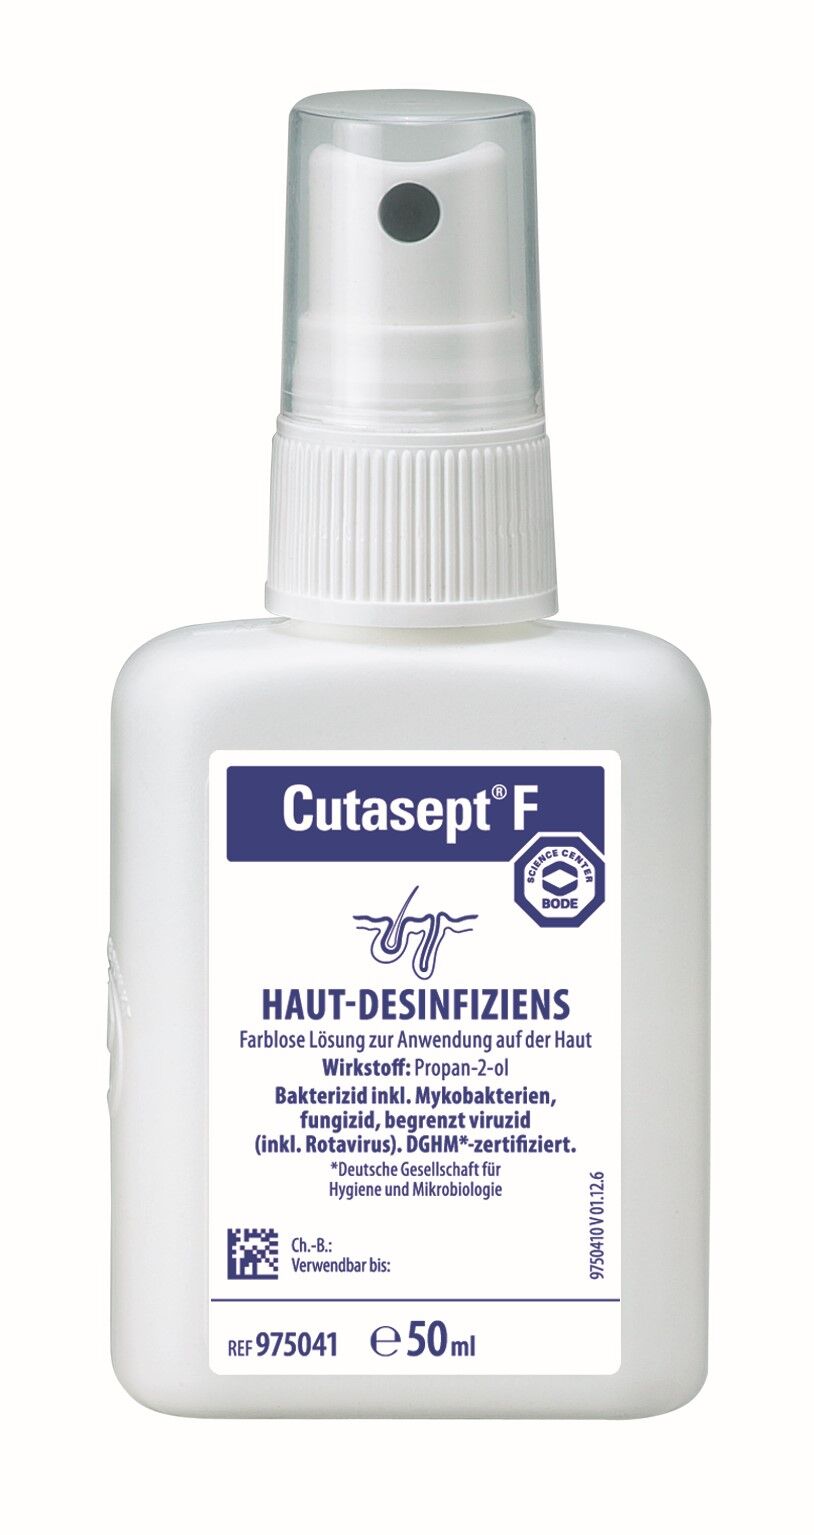 Hautdesinfektionsmittel von Cutasept F in der 50ml-Größe